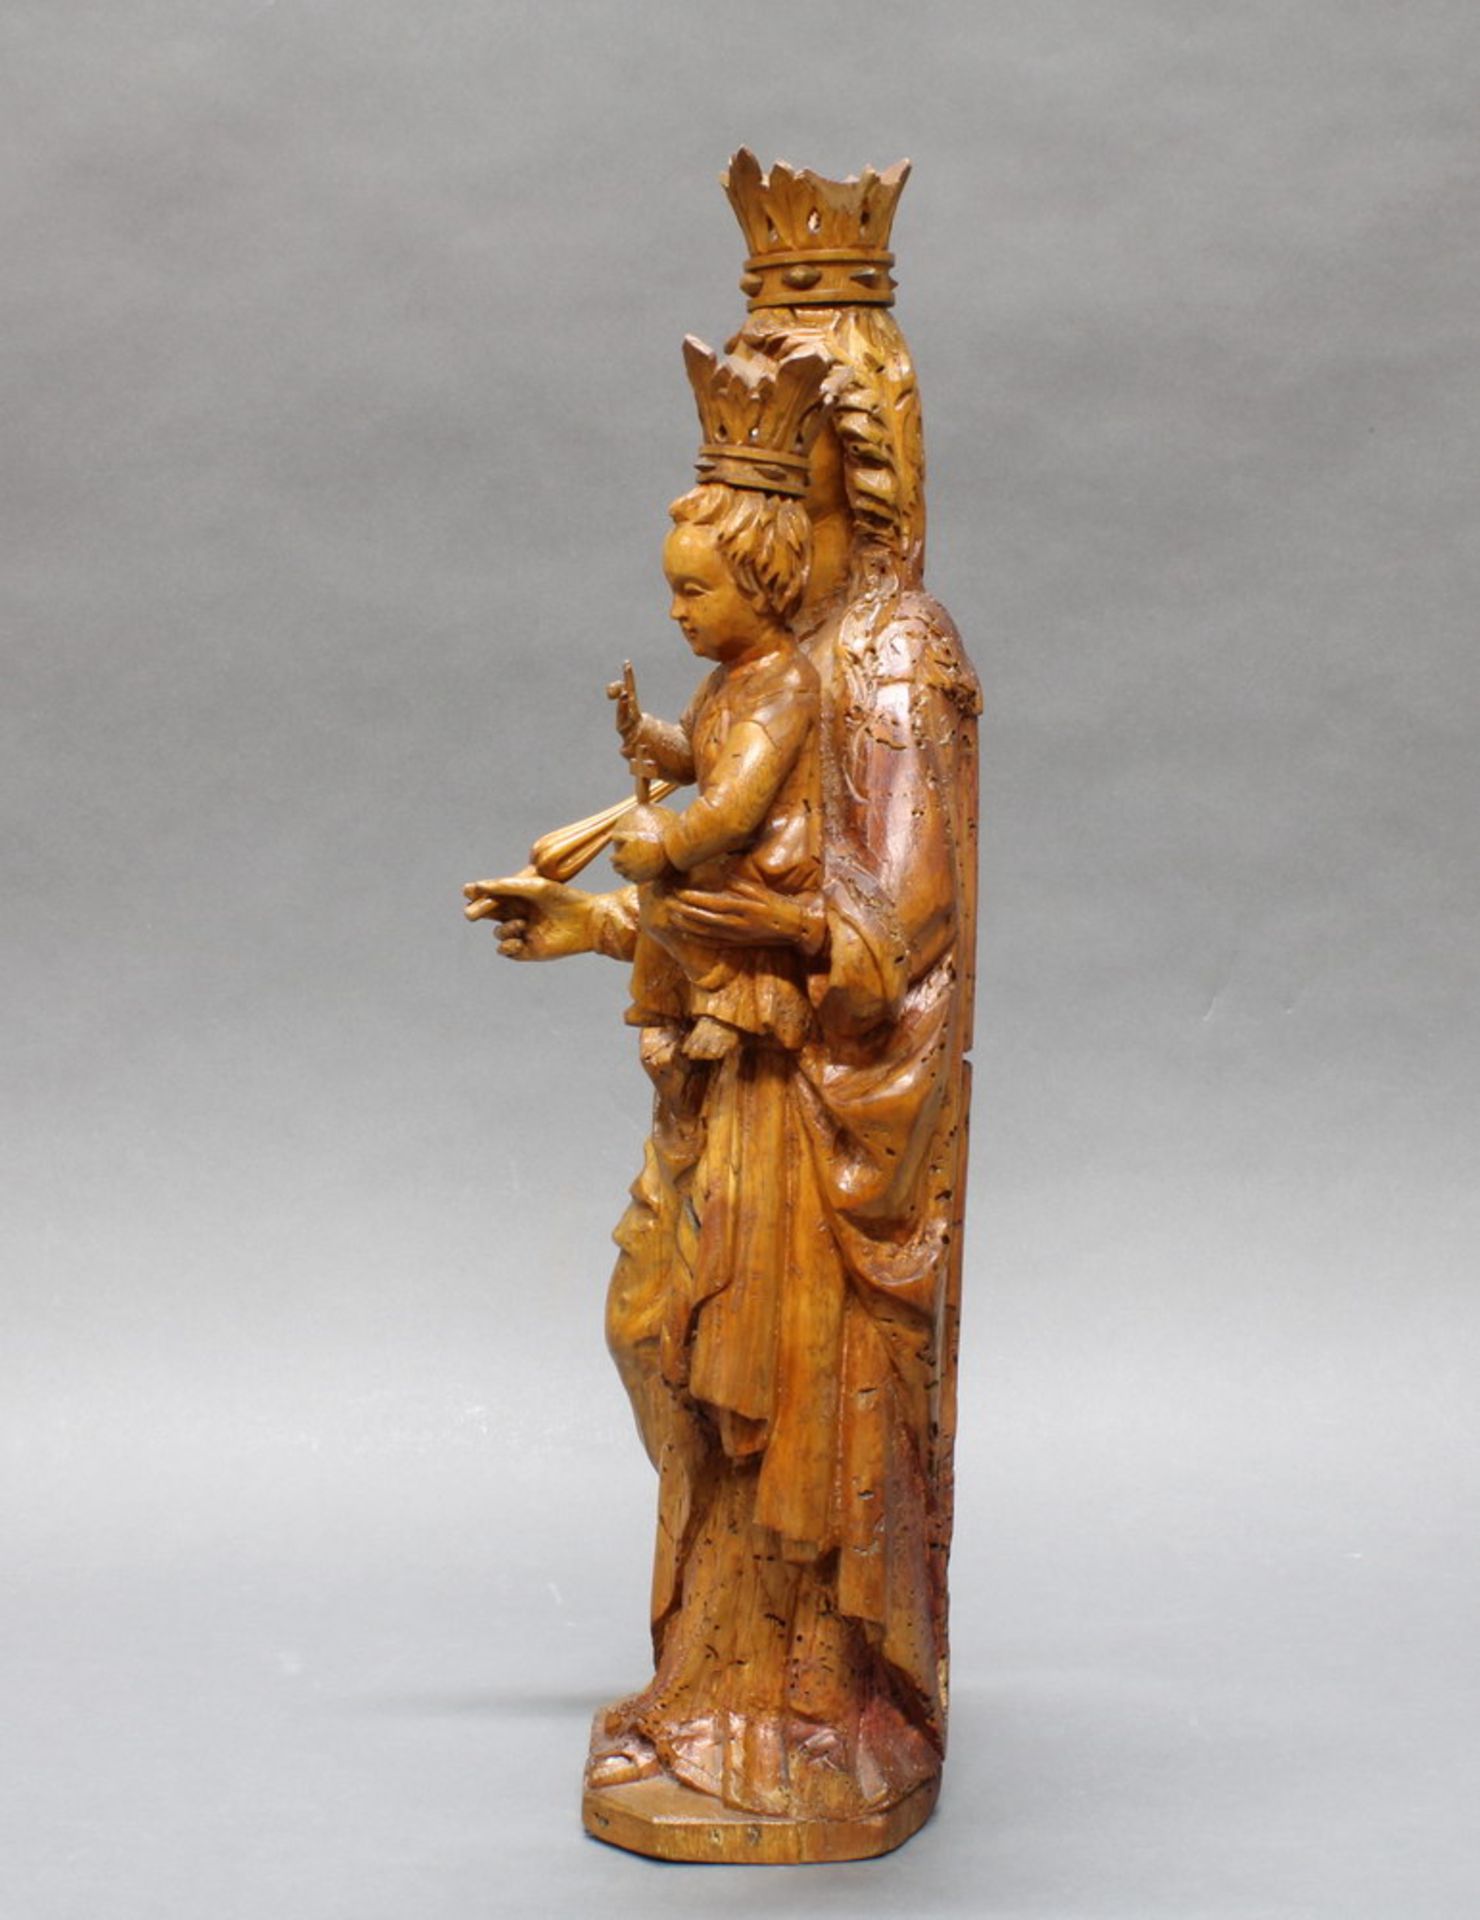 Skulptur, Holz geschnitzt, "Muttergottes mit Kind", 17./18. Jh., 51 cm hoch, alte Wurmlöcher, - Image 2 of 5